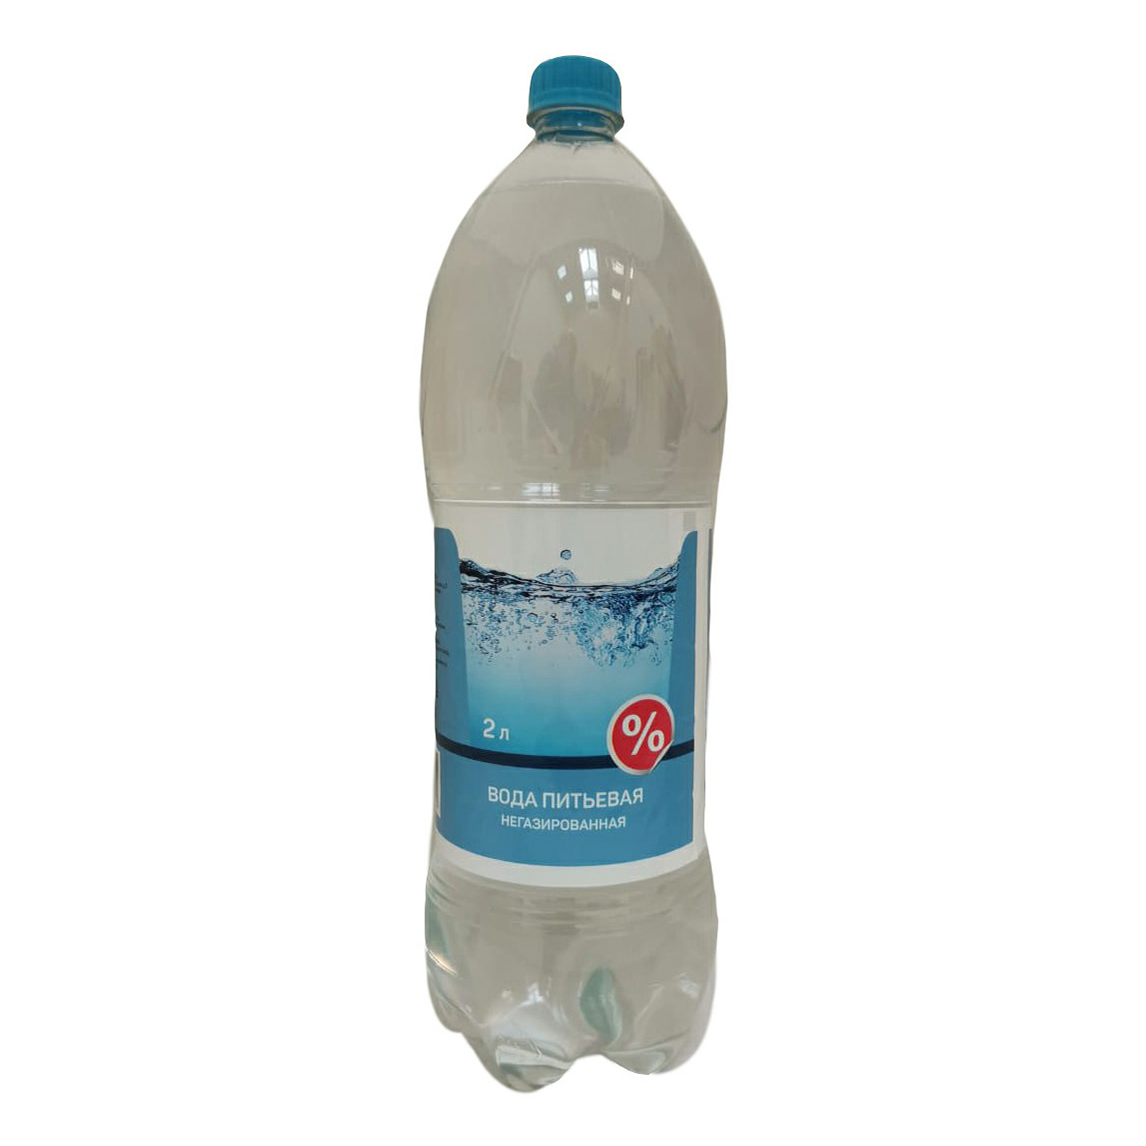 Вода питьевая Верная цена негазированная 2 л